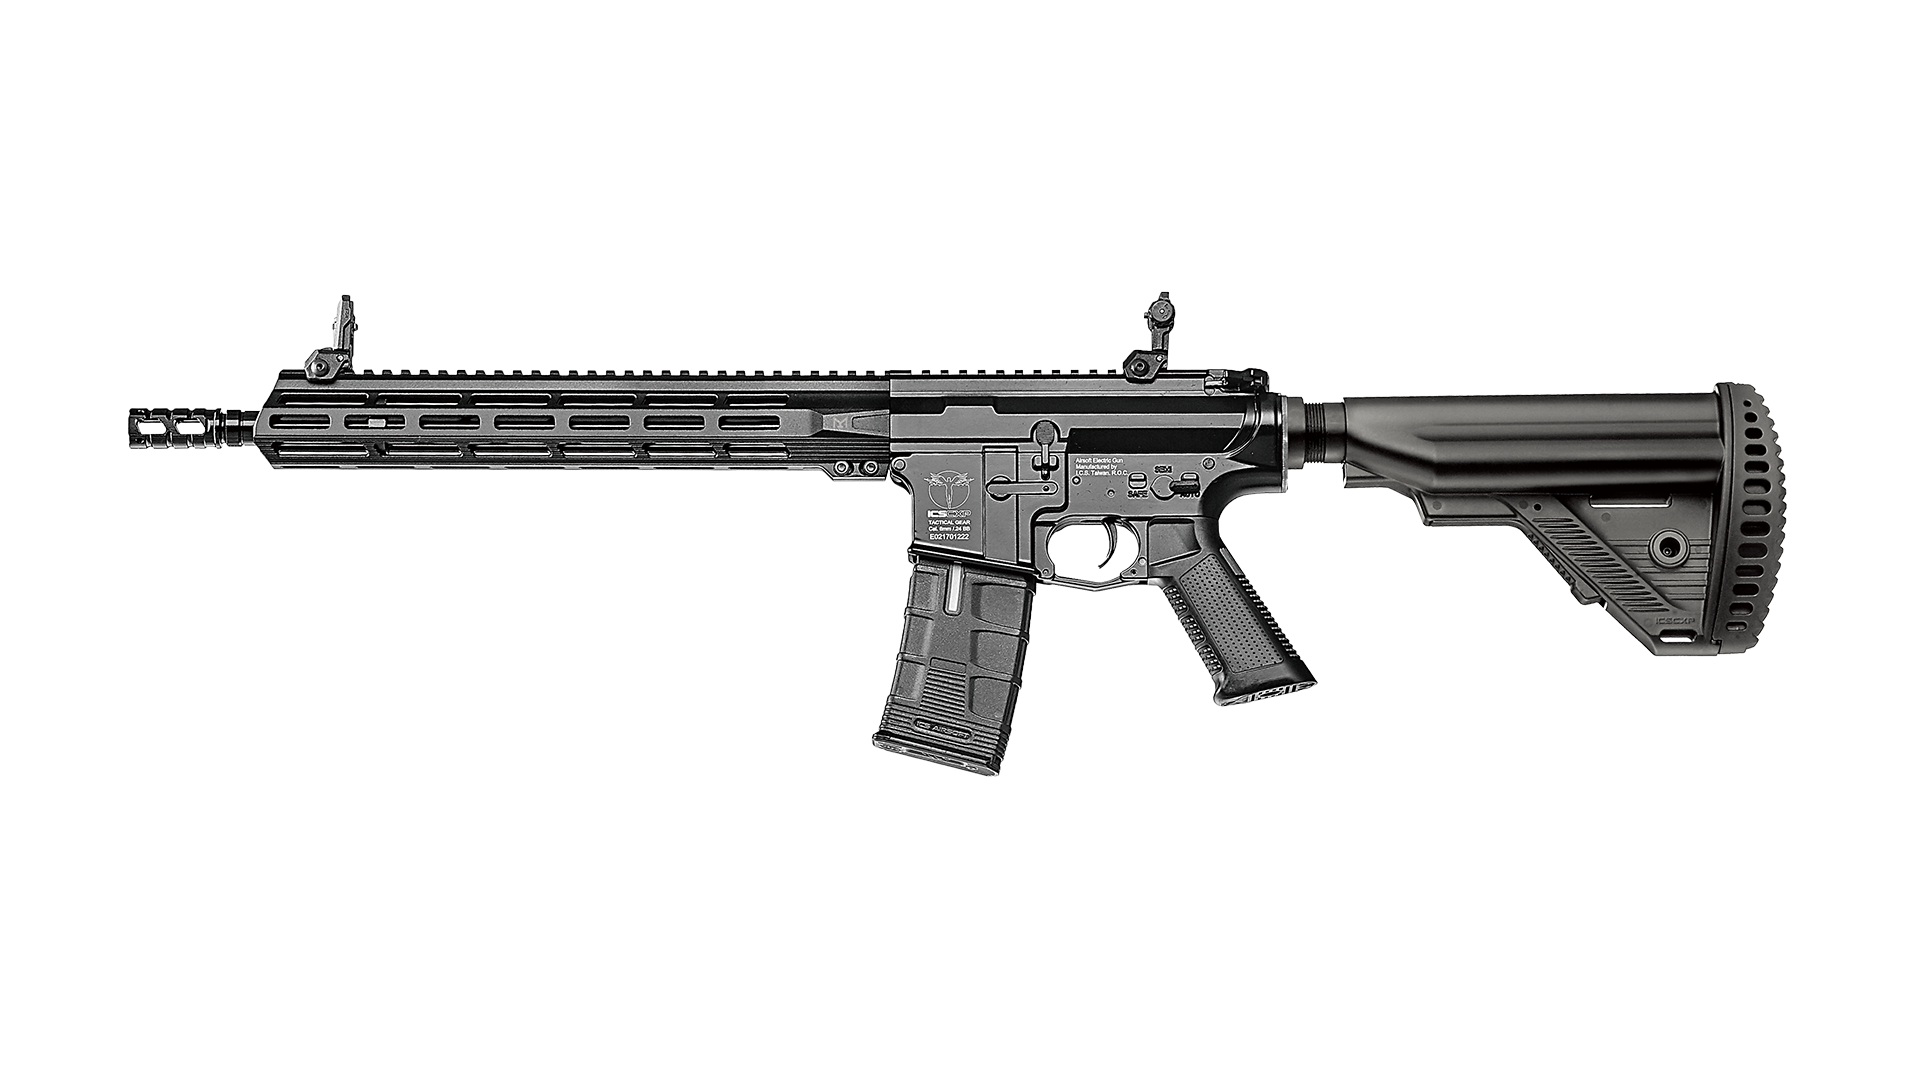 CXP-MMR Carbine S1 Stock